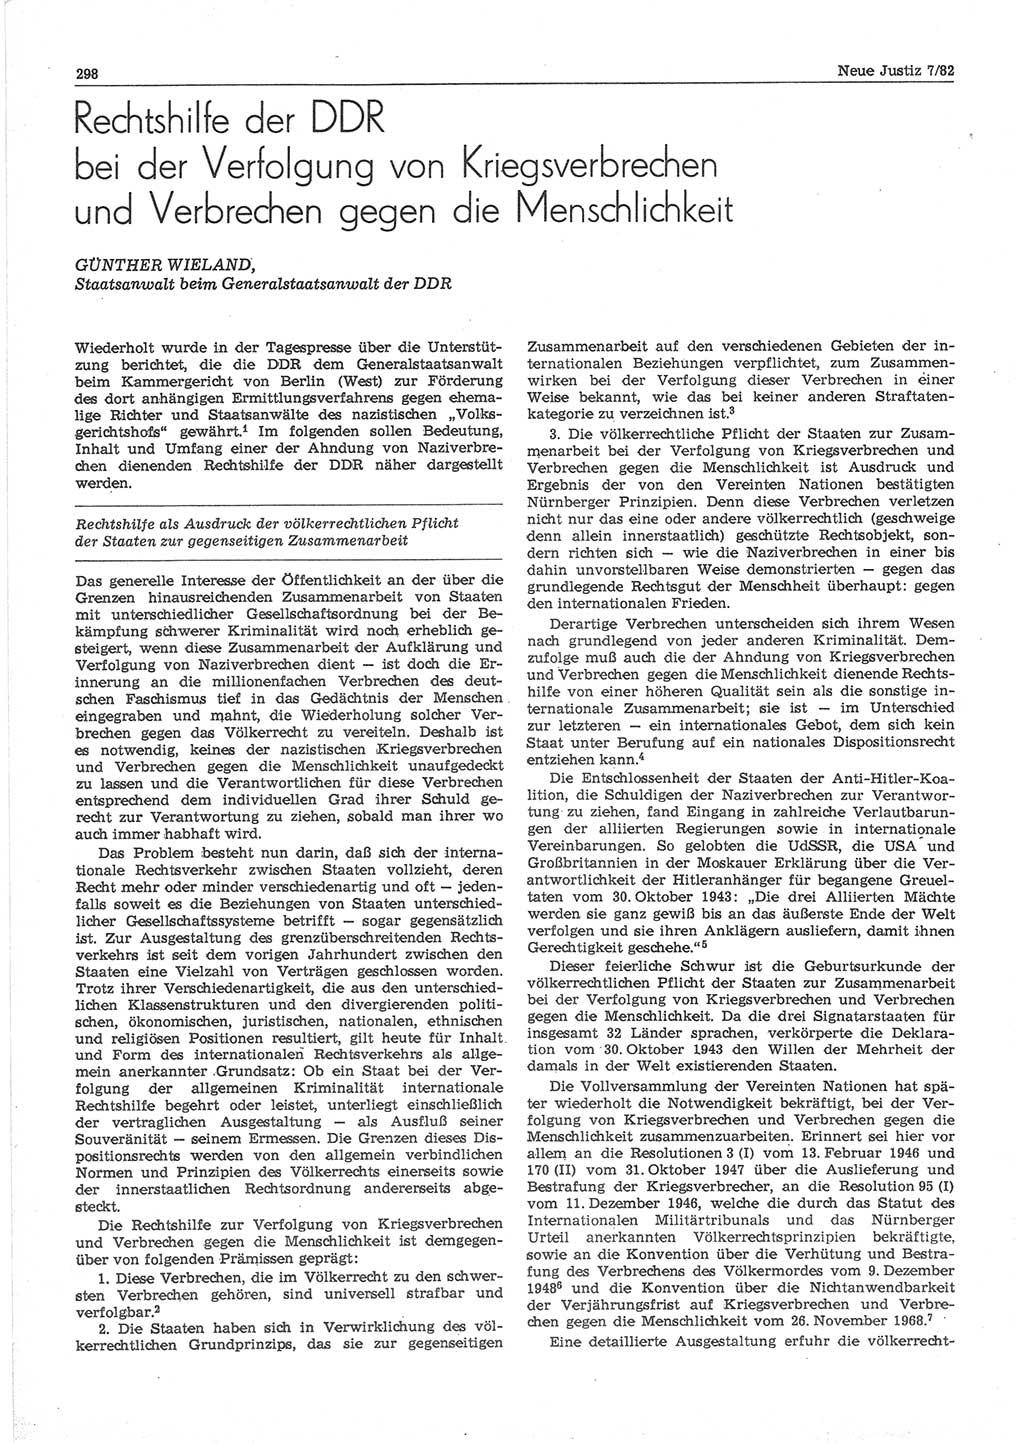 Neue Justiz (NJ), Zeitschrift für sozialistisches Recht und Gesetzlichkeit [Deutsche Demokratische Republik (DDR)], 36. Jahrgang 1982, Seite 298 (NJ DDR 1982, S. 298)